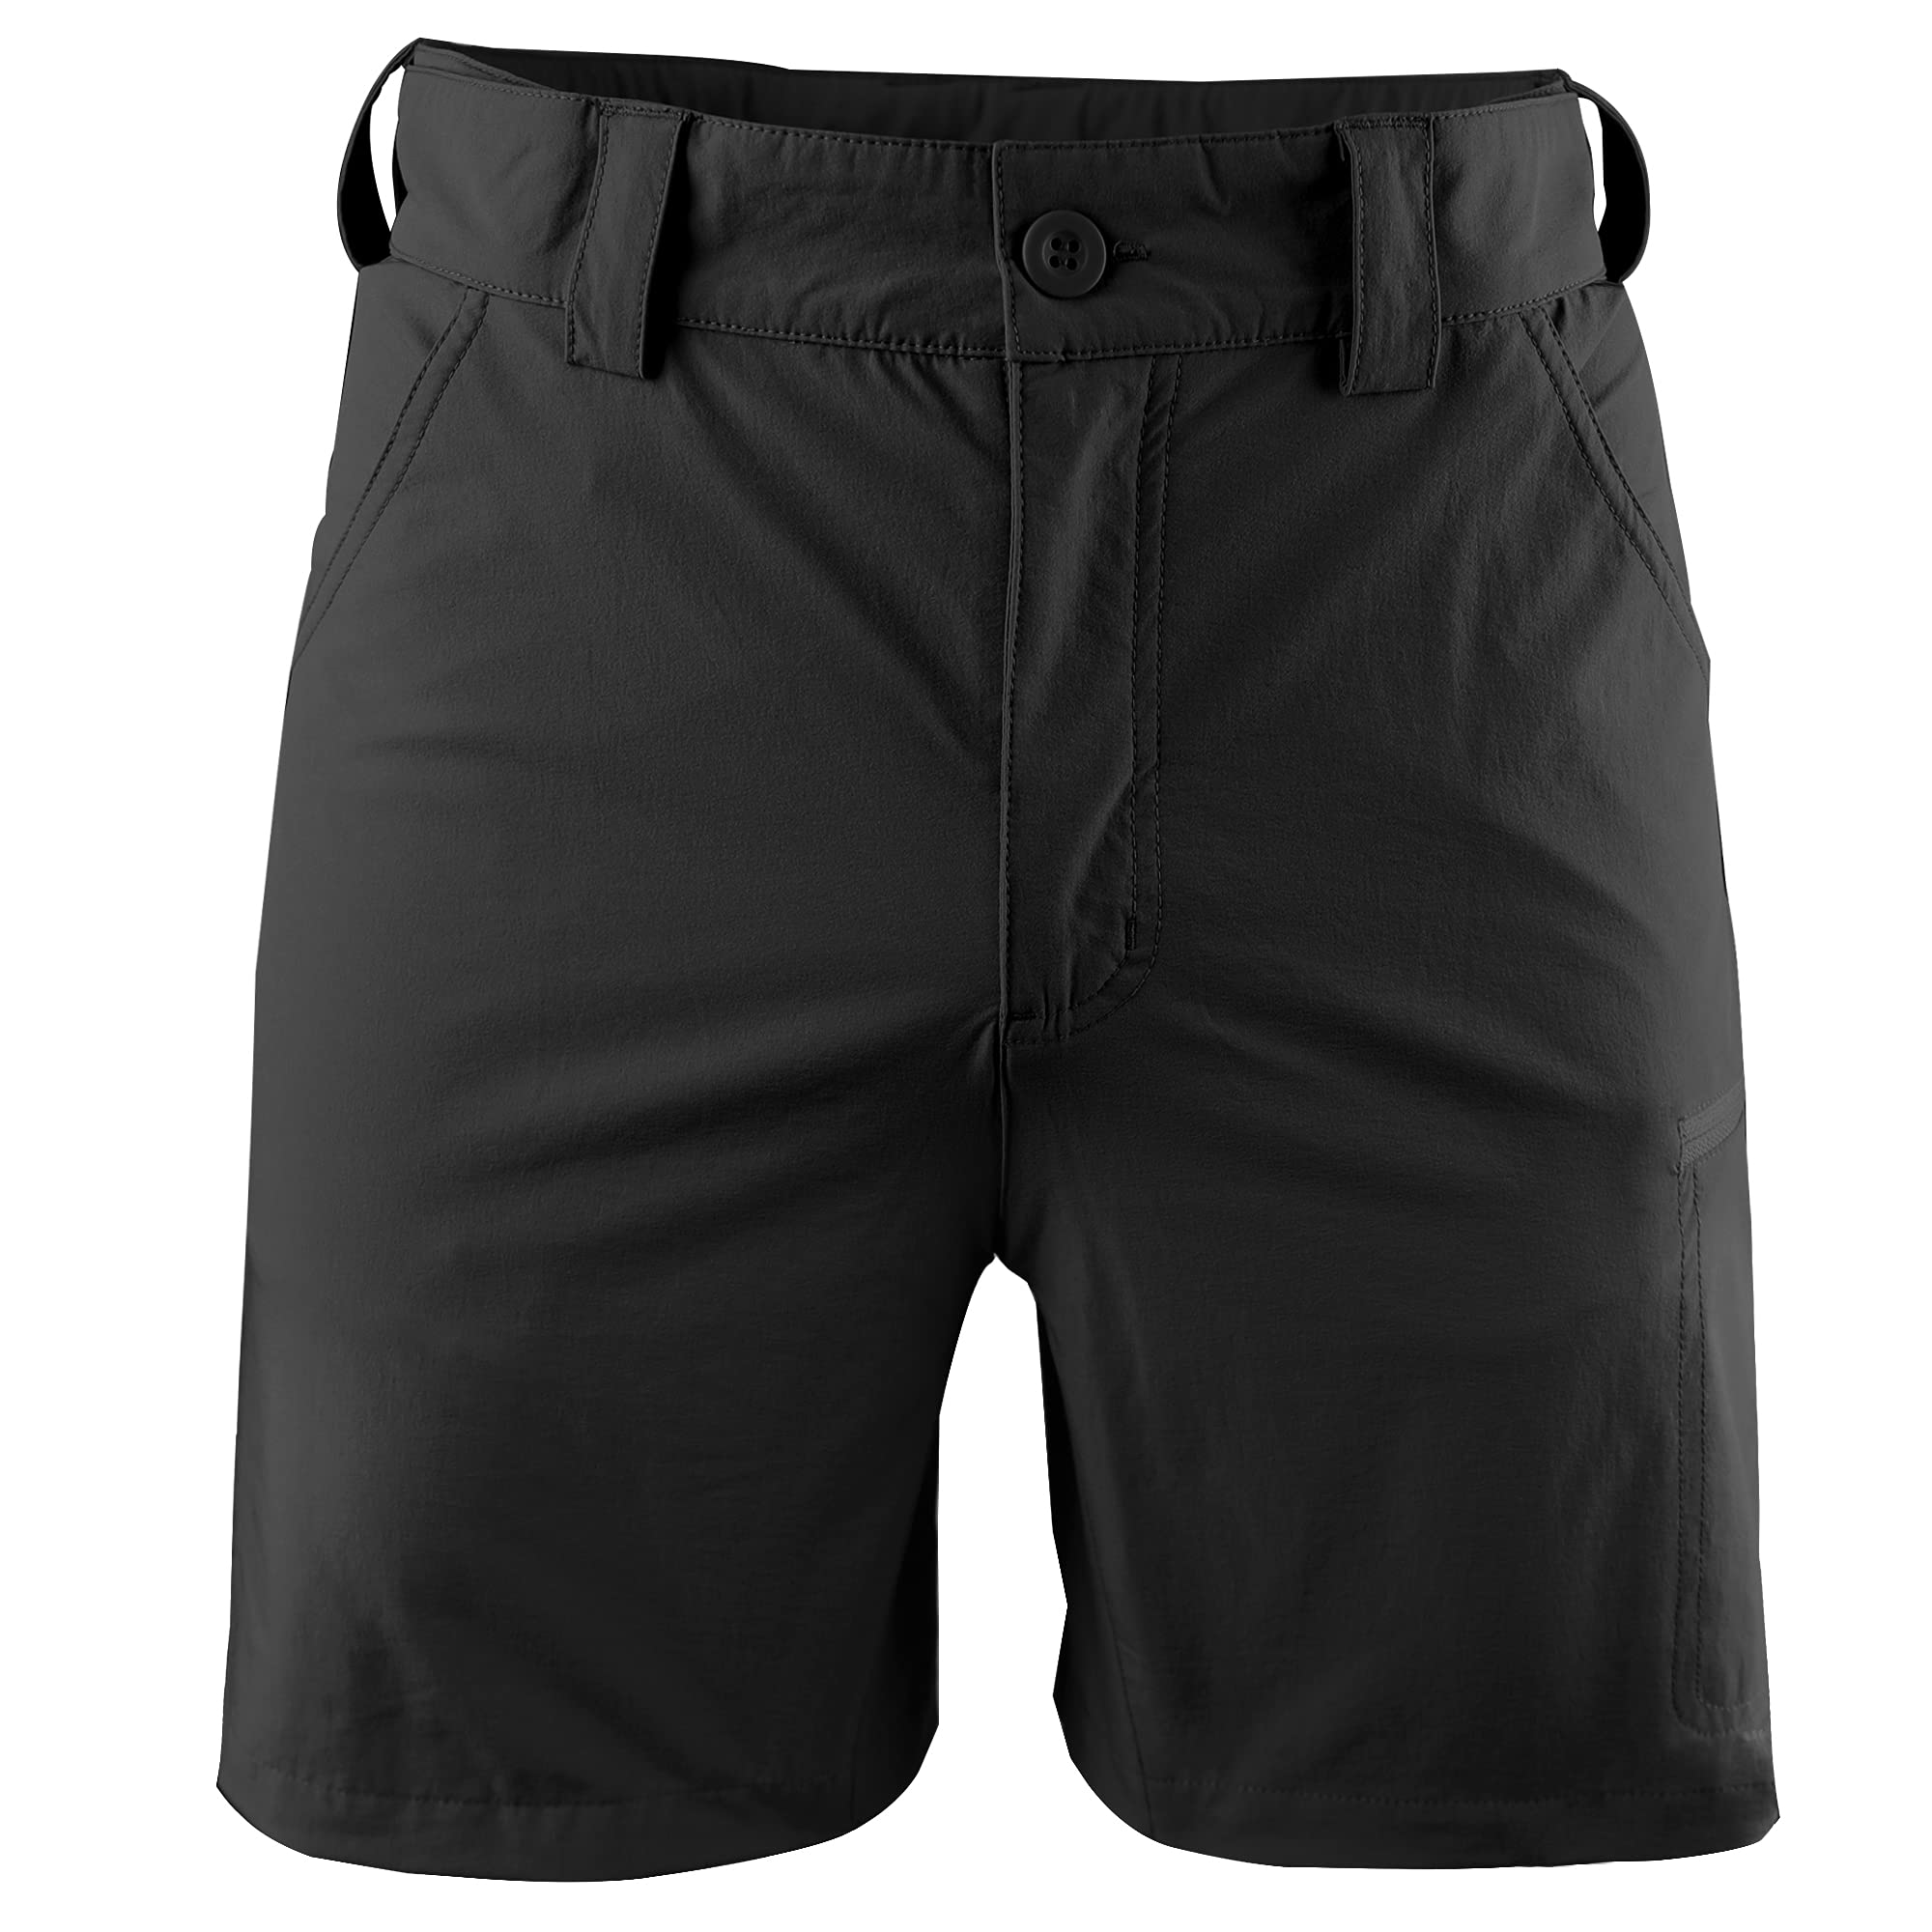 FitsT4 Men's Rain Pants Lightweight Waterproof Outdoor Pants